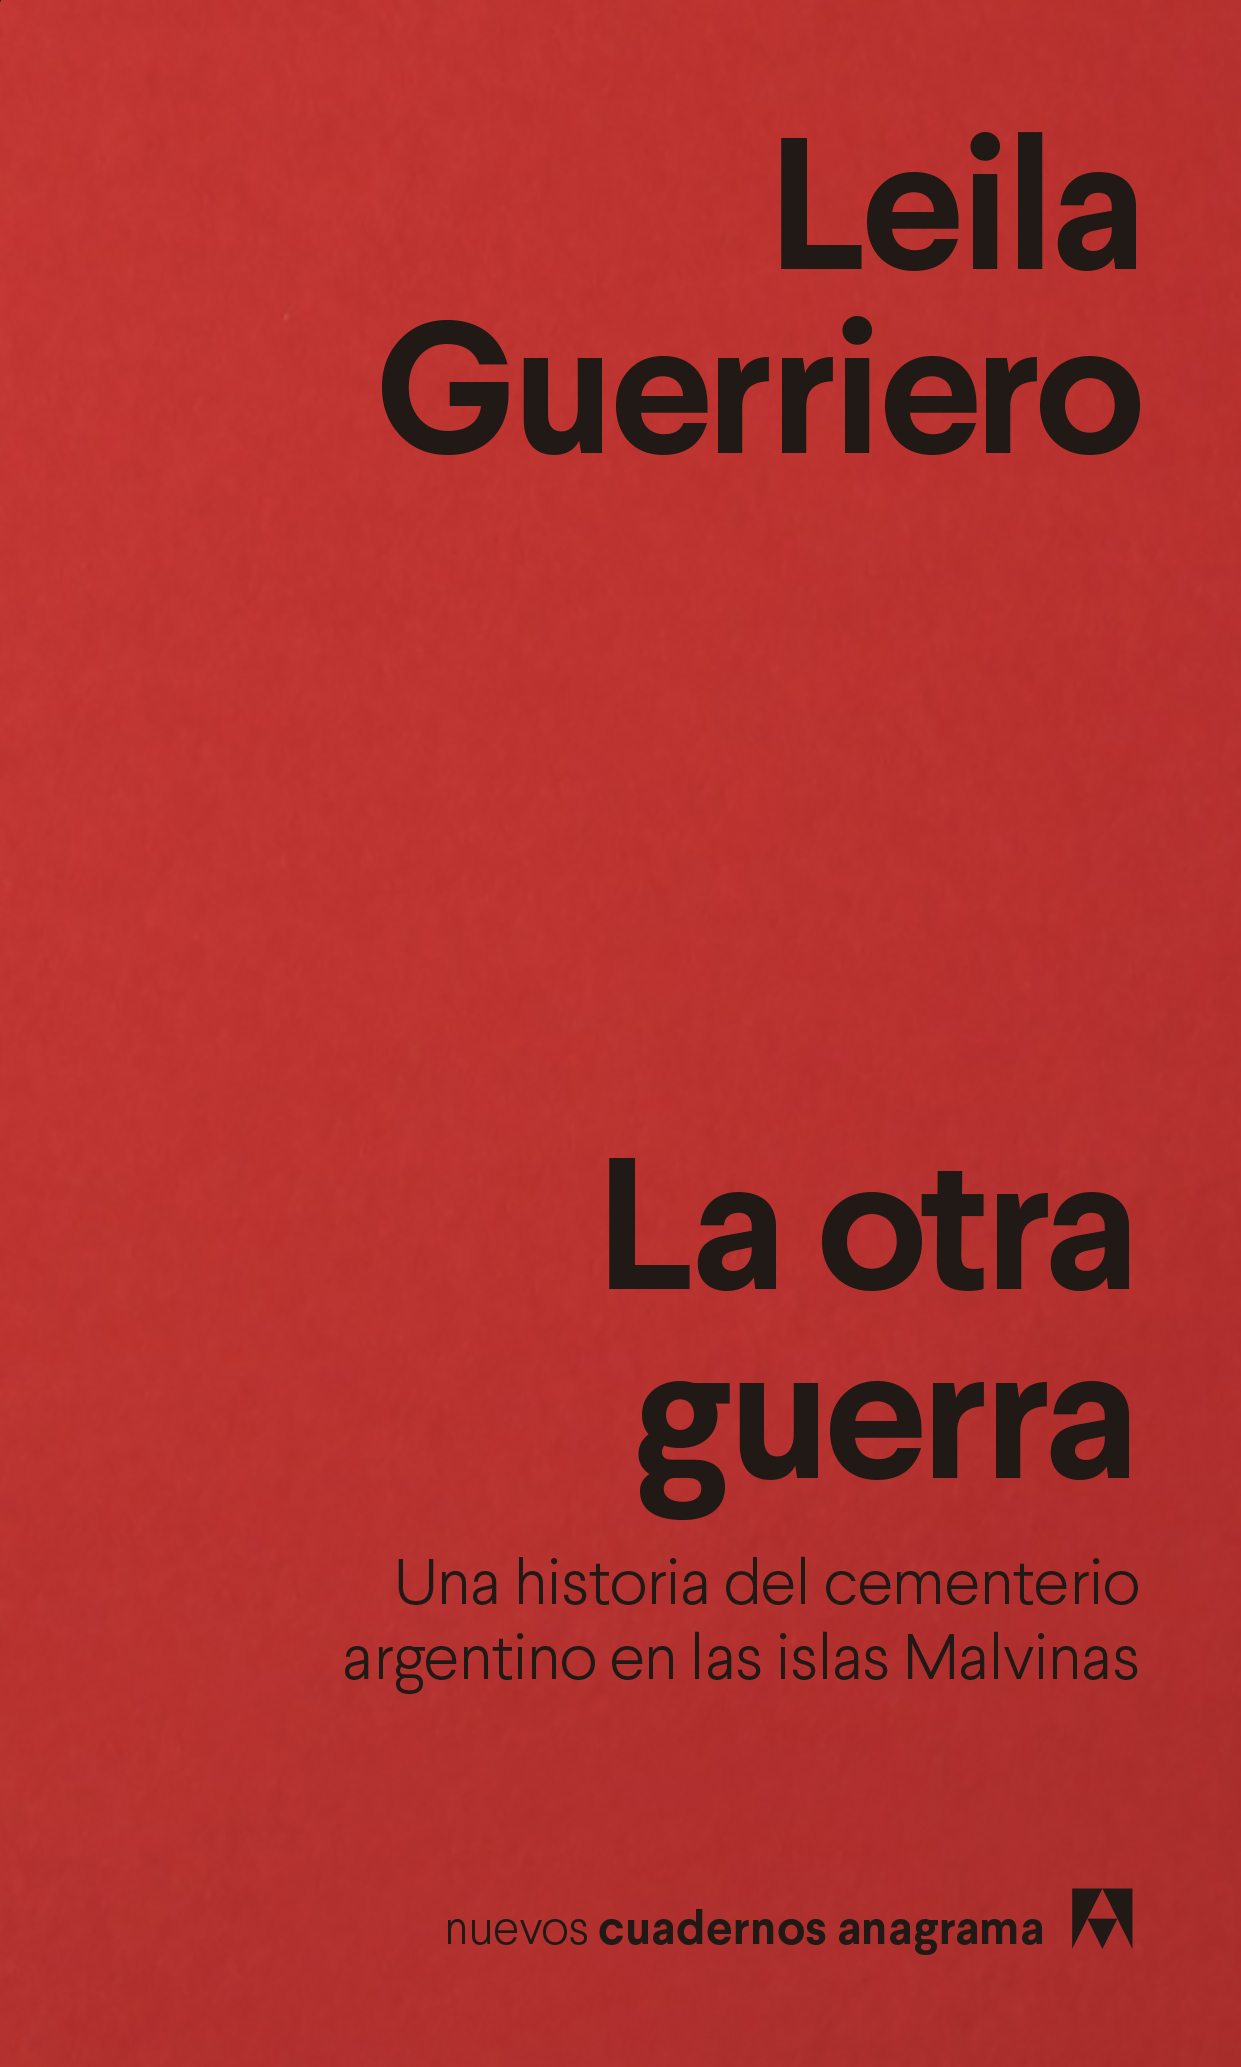 La otra guerra - Guerriero, Leila - 978-84-339-1648-8 - Editorial